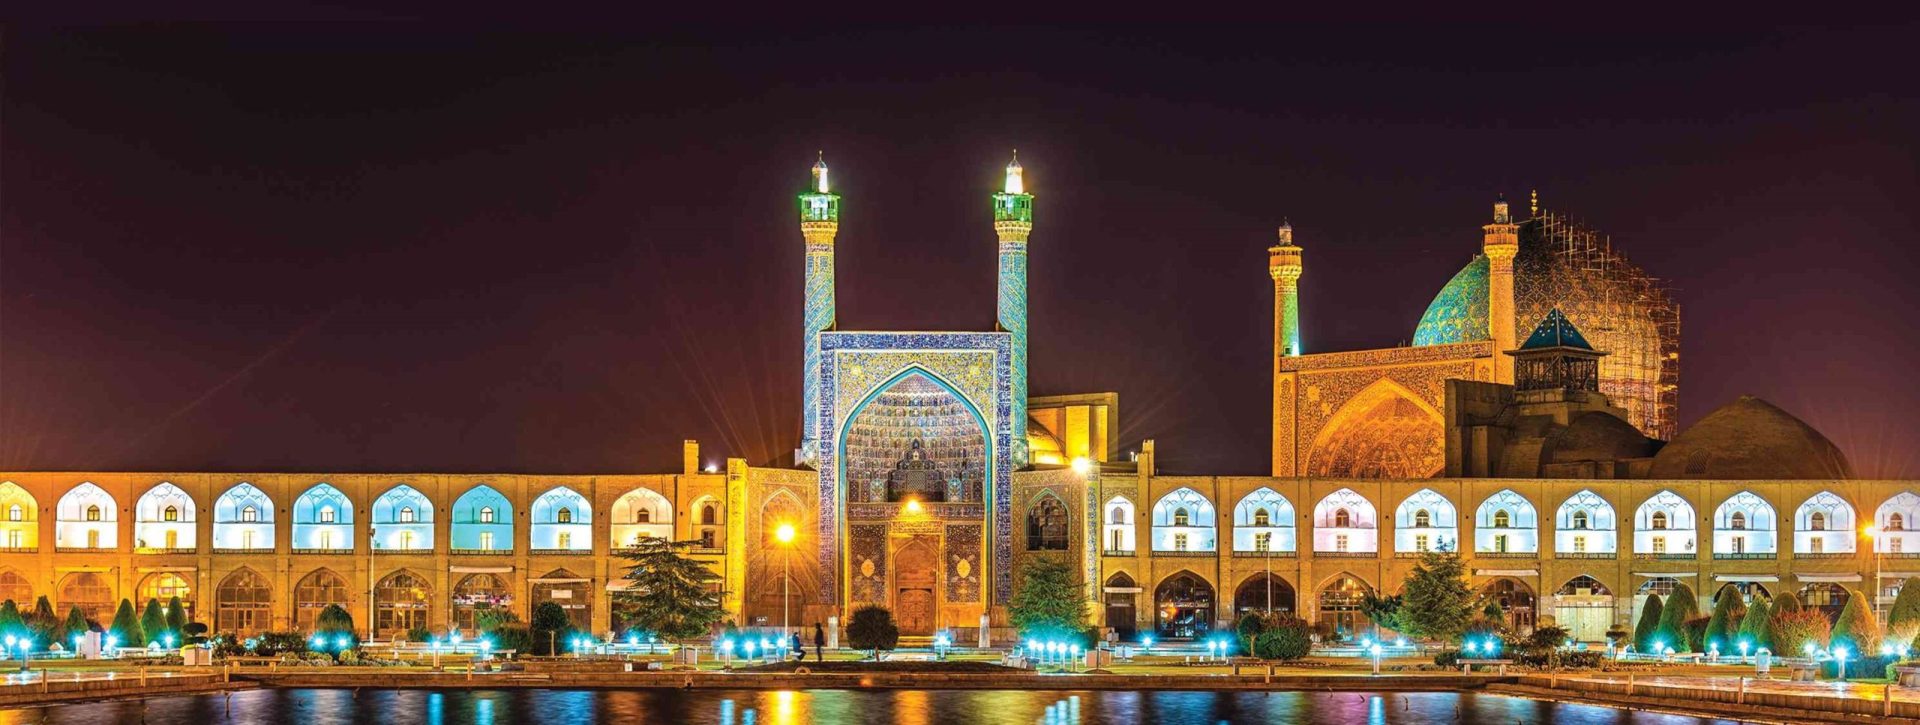 مسجد امام در مجموعه عالی قاپو